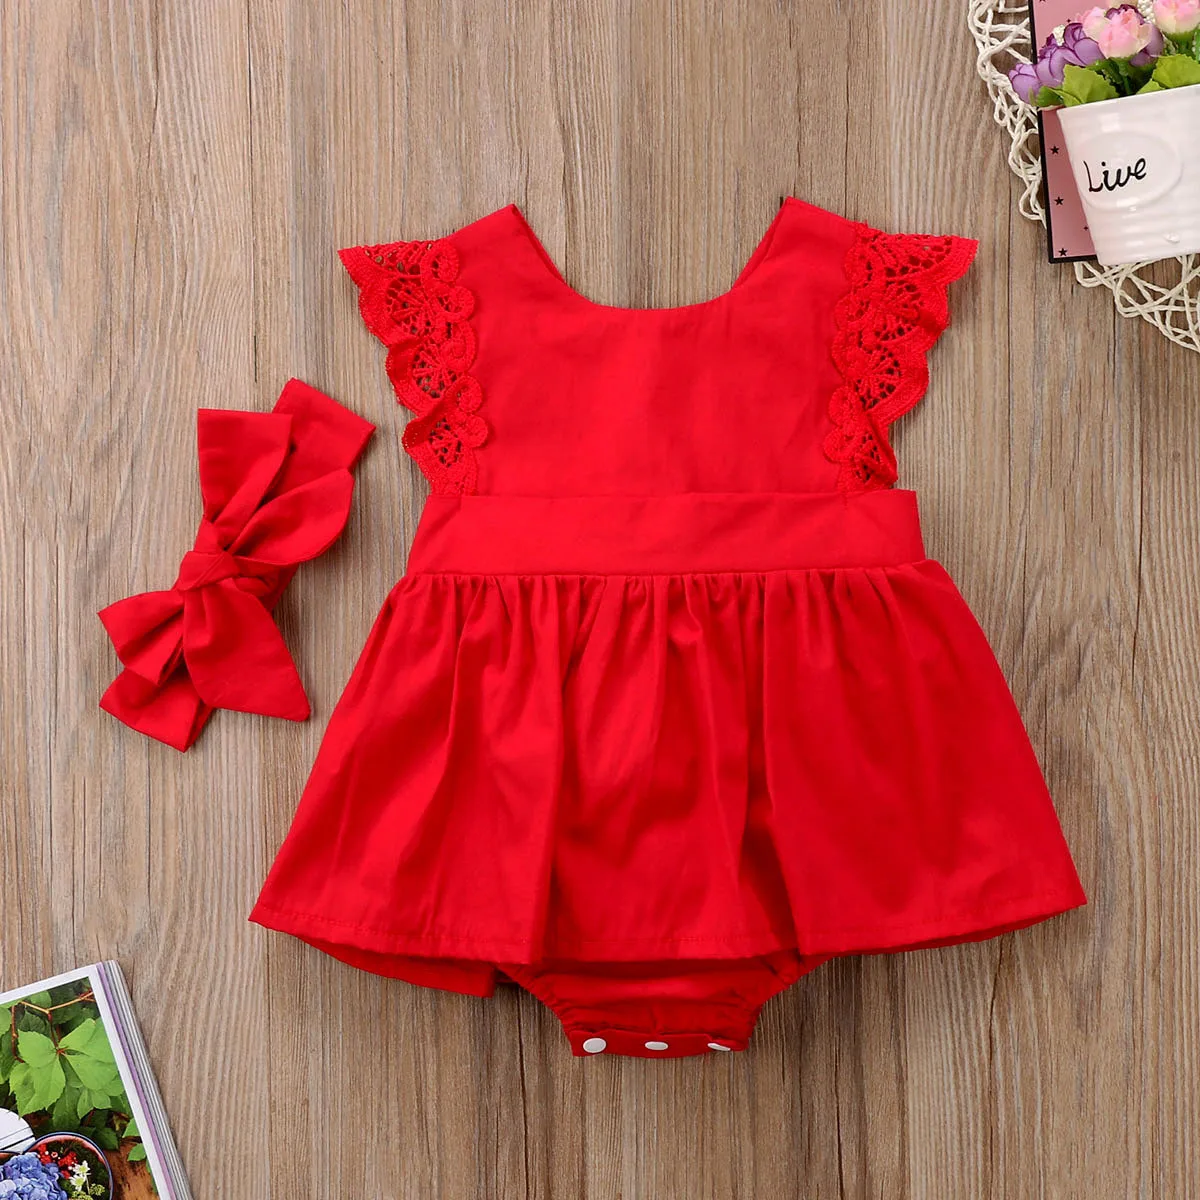 Новая модная одежда для новорожденных и маленьких девочек, красное боди+ повязка на голову, детское платье, наряд для 0-24 месяцев